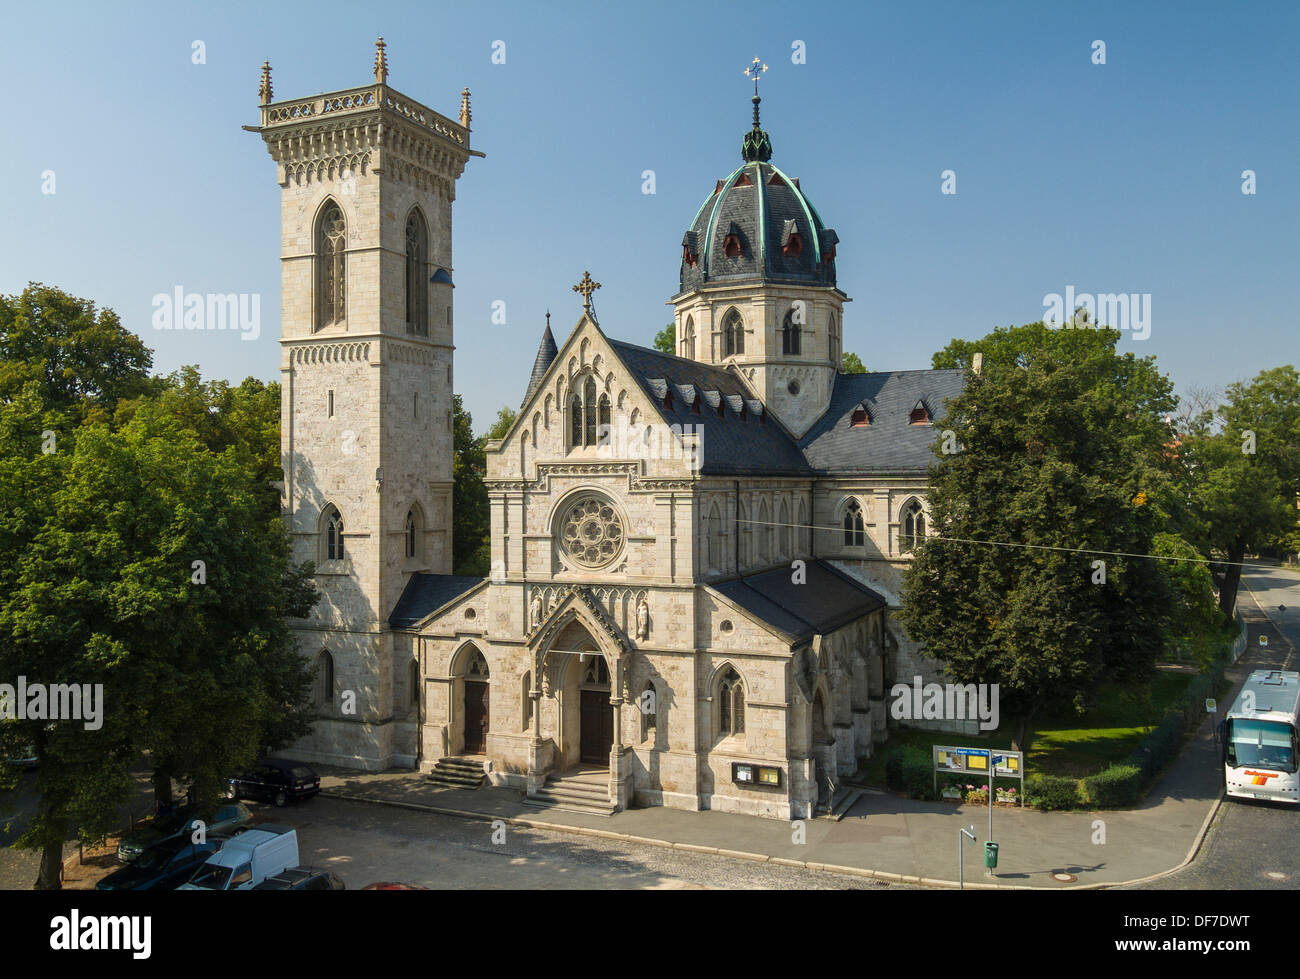 Herz-Jesu-Kirche, église du Sacré-Cœur, 1891, Weimar, Thuringe, Allemagne Banque D'Images